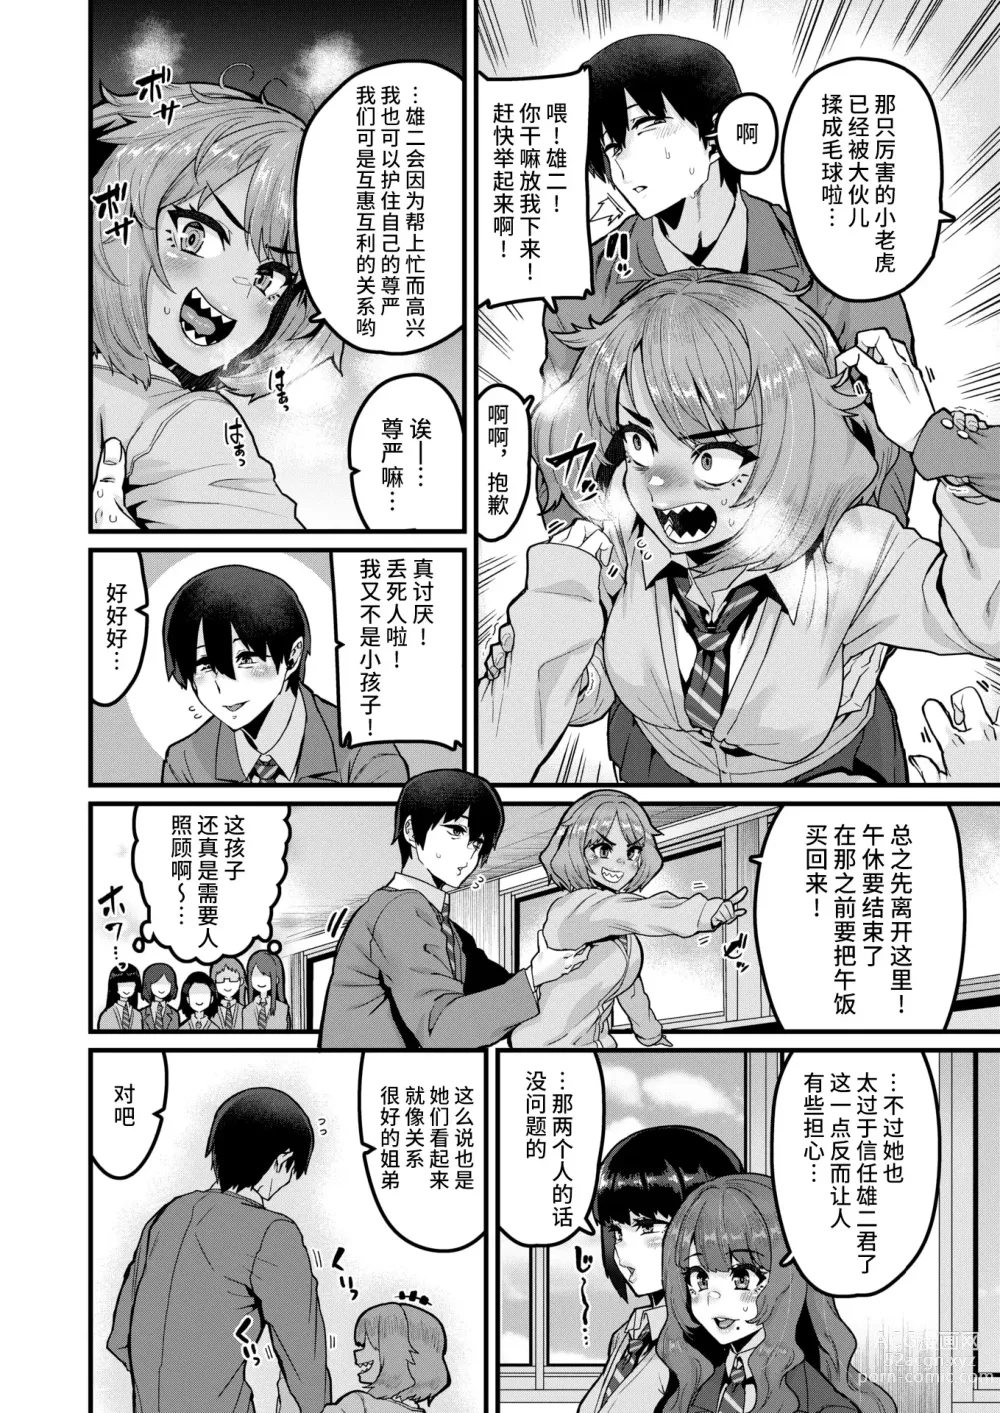 Page 4 of manga Tarinai Mono wa Oginatte!